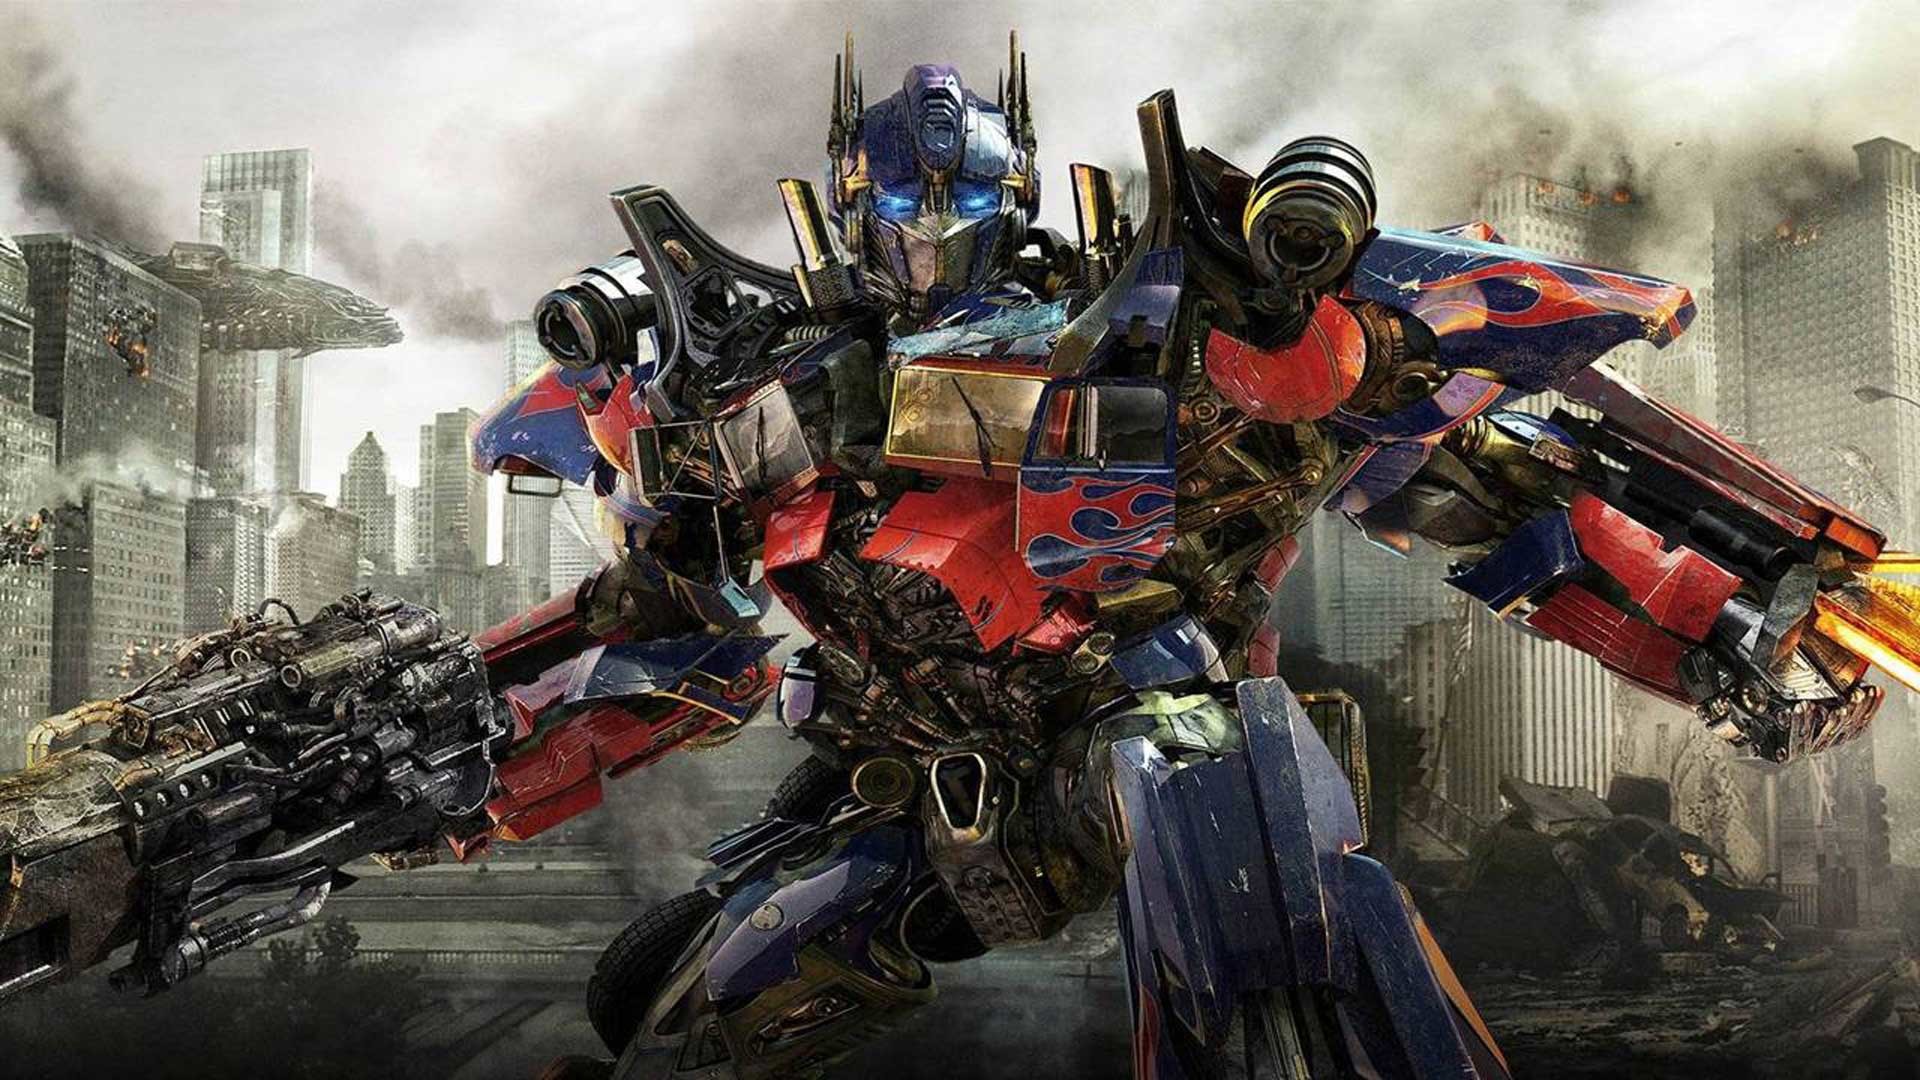 Hình nền Optimus Prime: Sức mạnh và quyền lực trên máy tính của bạn! Hình nền Optimus Prime không chỉ đơn giản là một bức ảnh, nó còn đại diện cho sức mạnh, tình yêu thương và tinh thần chiến đấu của người hùng. Hãy tải xuống hình nền này và cho phép Optimus Prime truyền cảm hứng cho bạn mỗi khi sử dụng máy tính.